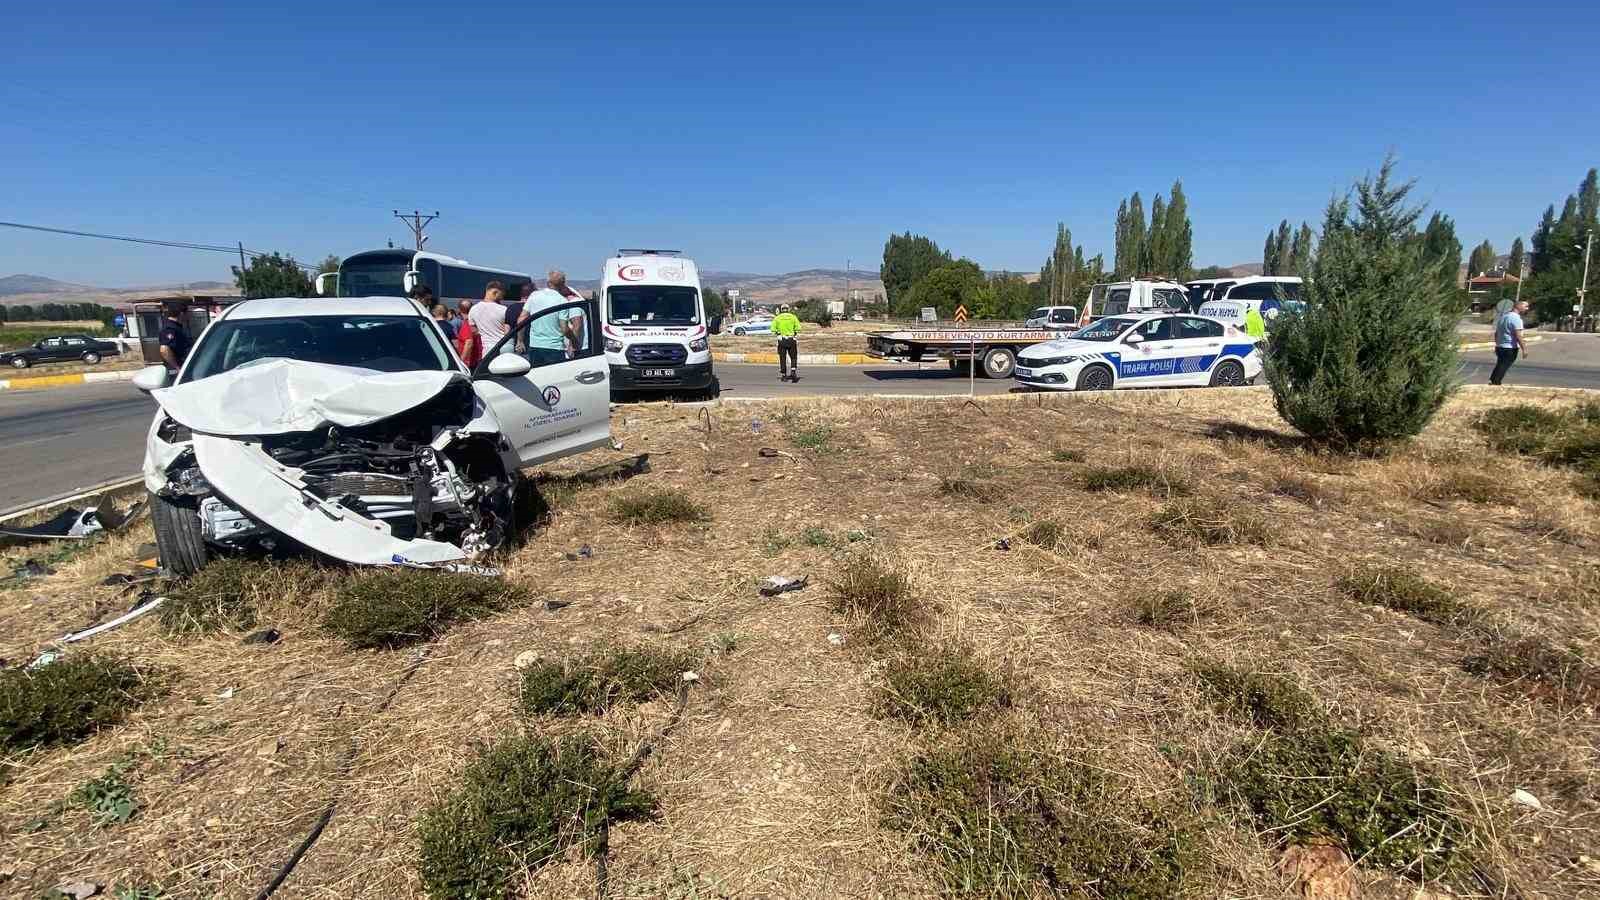 İl Özel İdaresine ait arazi aracıyla otomobilin karıştığı kazada 5 kişi yaralandı